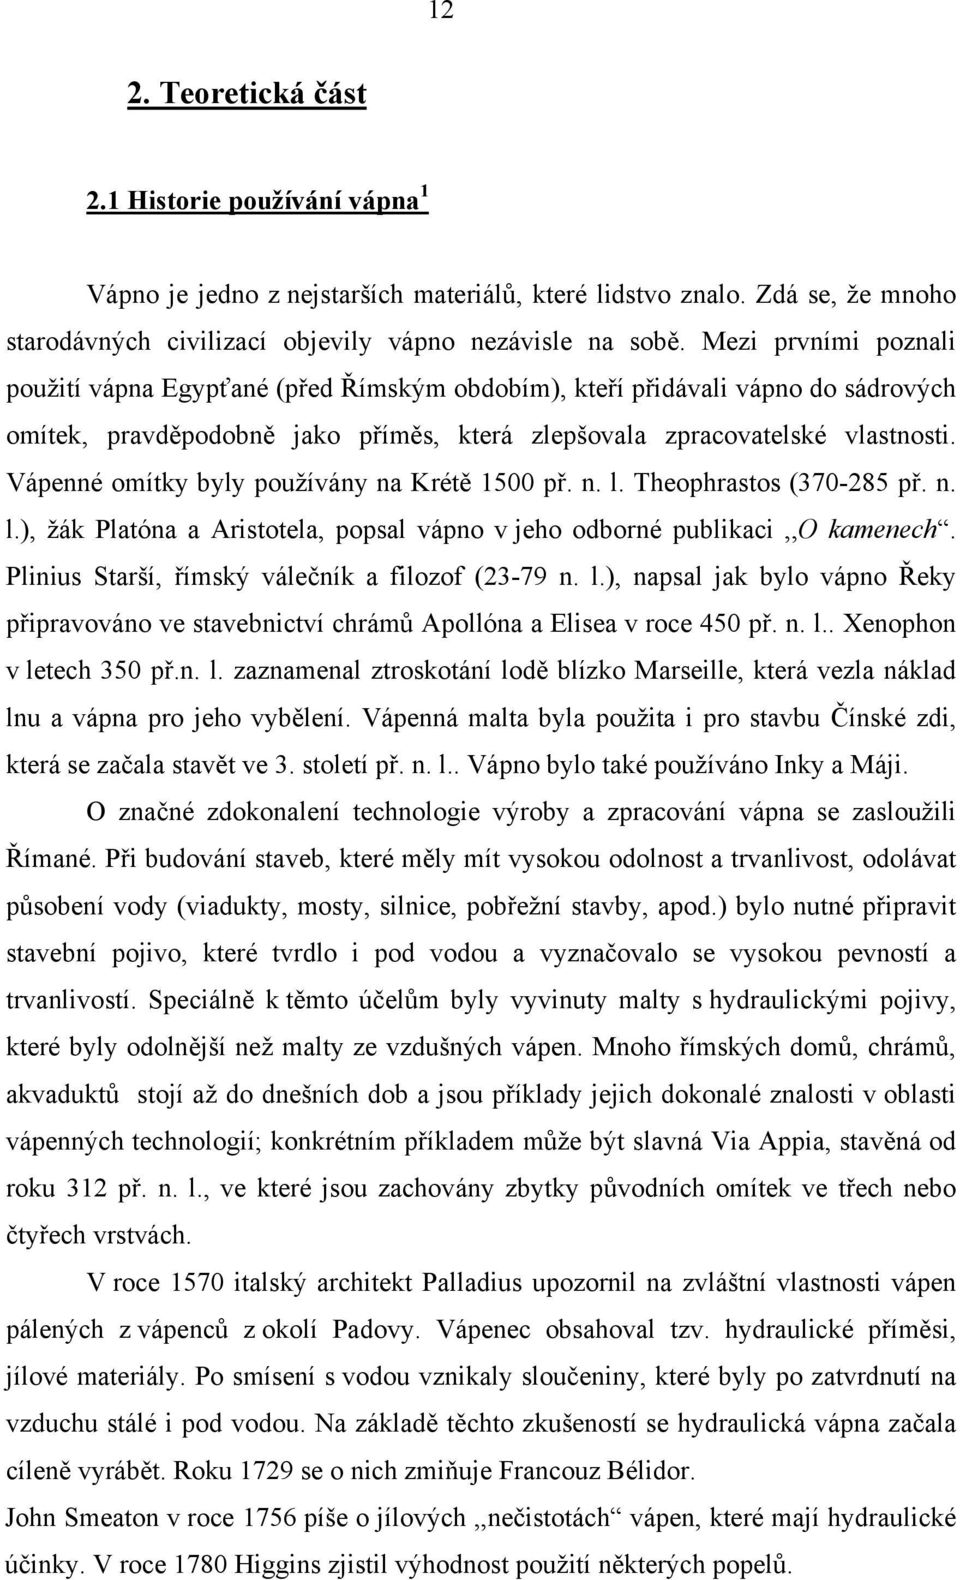 Vápenné omítky byly používány na Krétě 1500 př. n. l. Theophrastos (370-285 př. n. l.), žák Platóna a Aristotela, popsal vápno v jeho odborné publikaci,,o kamenech.